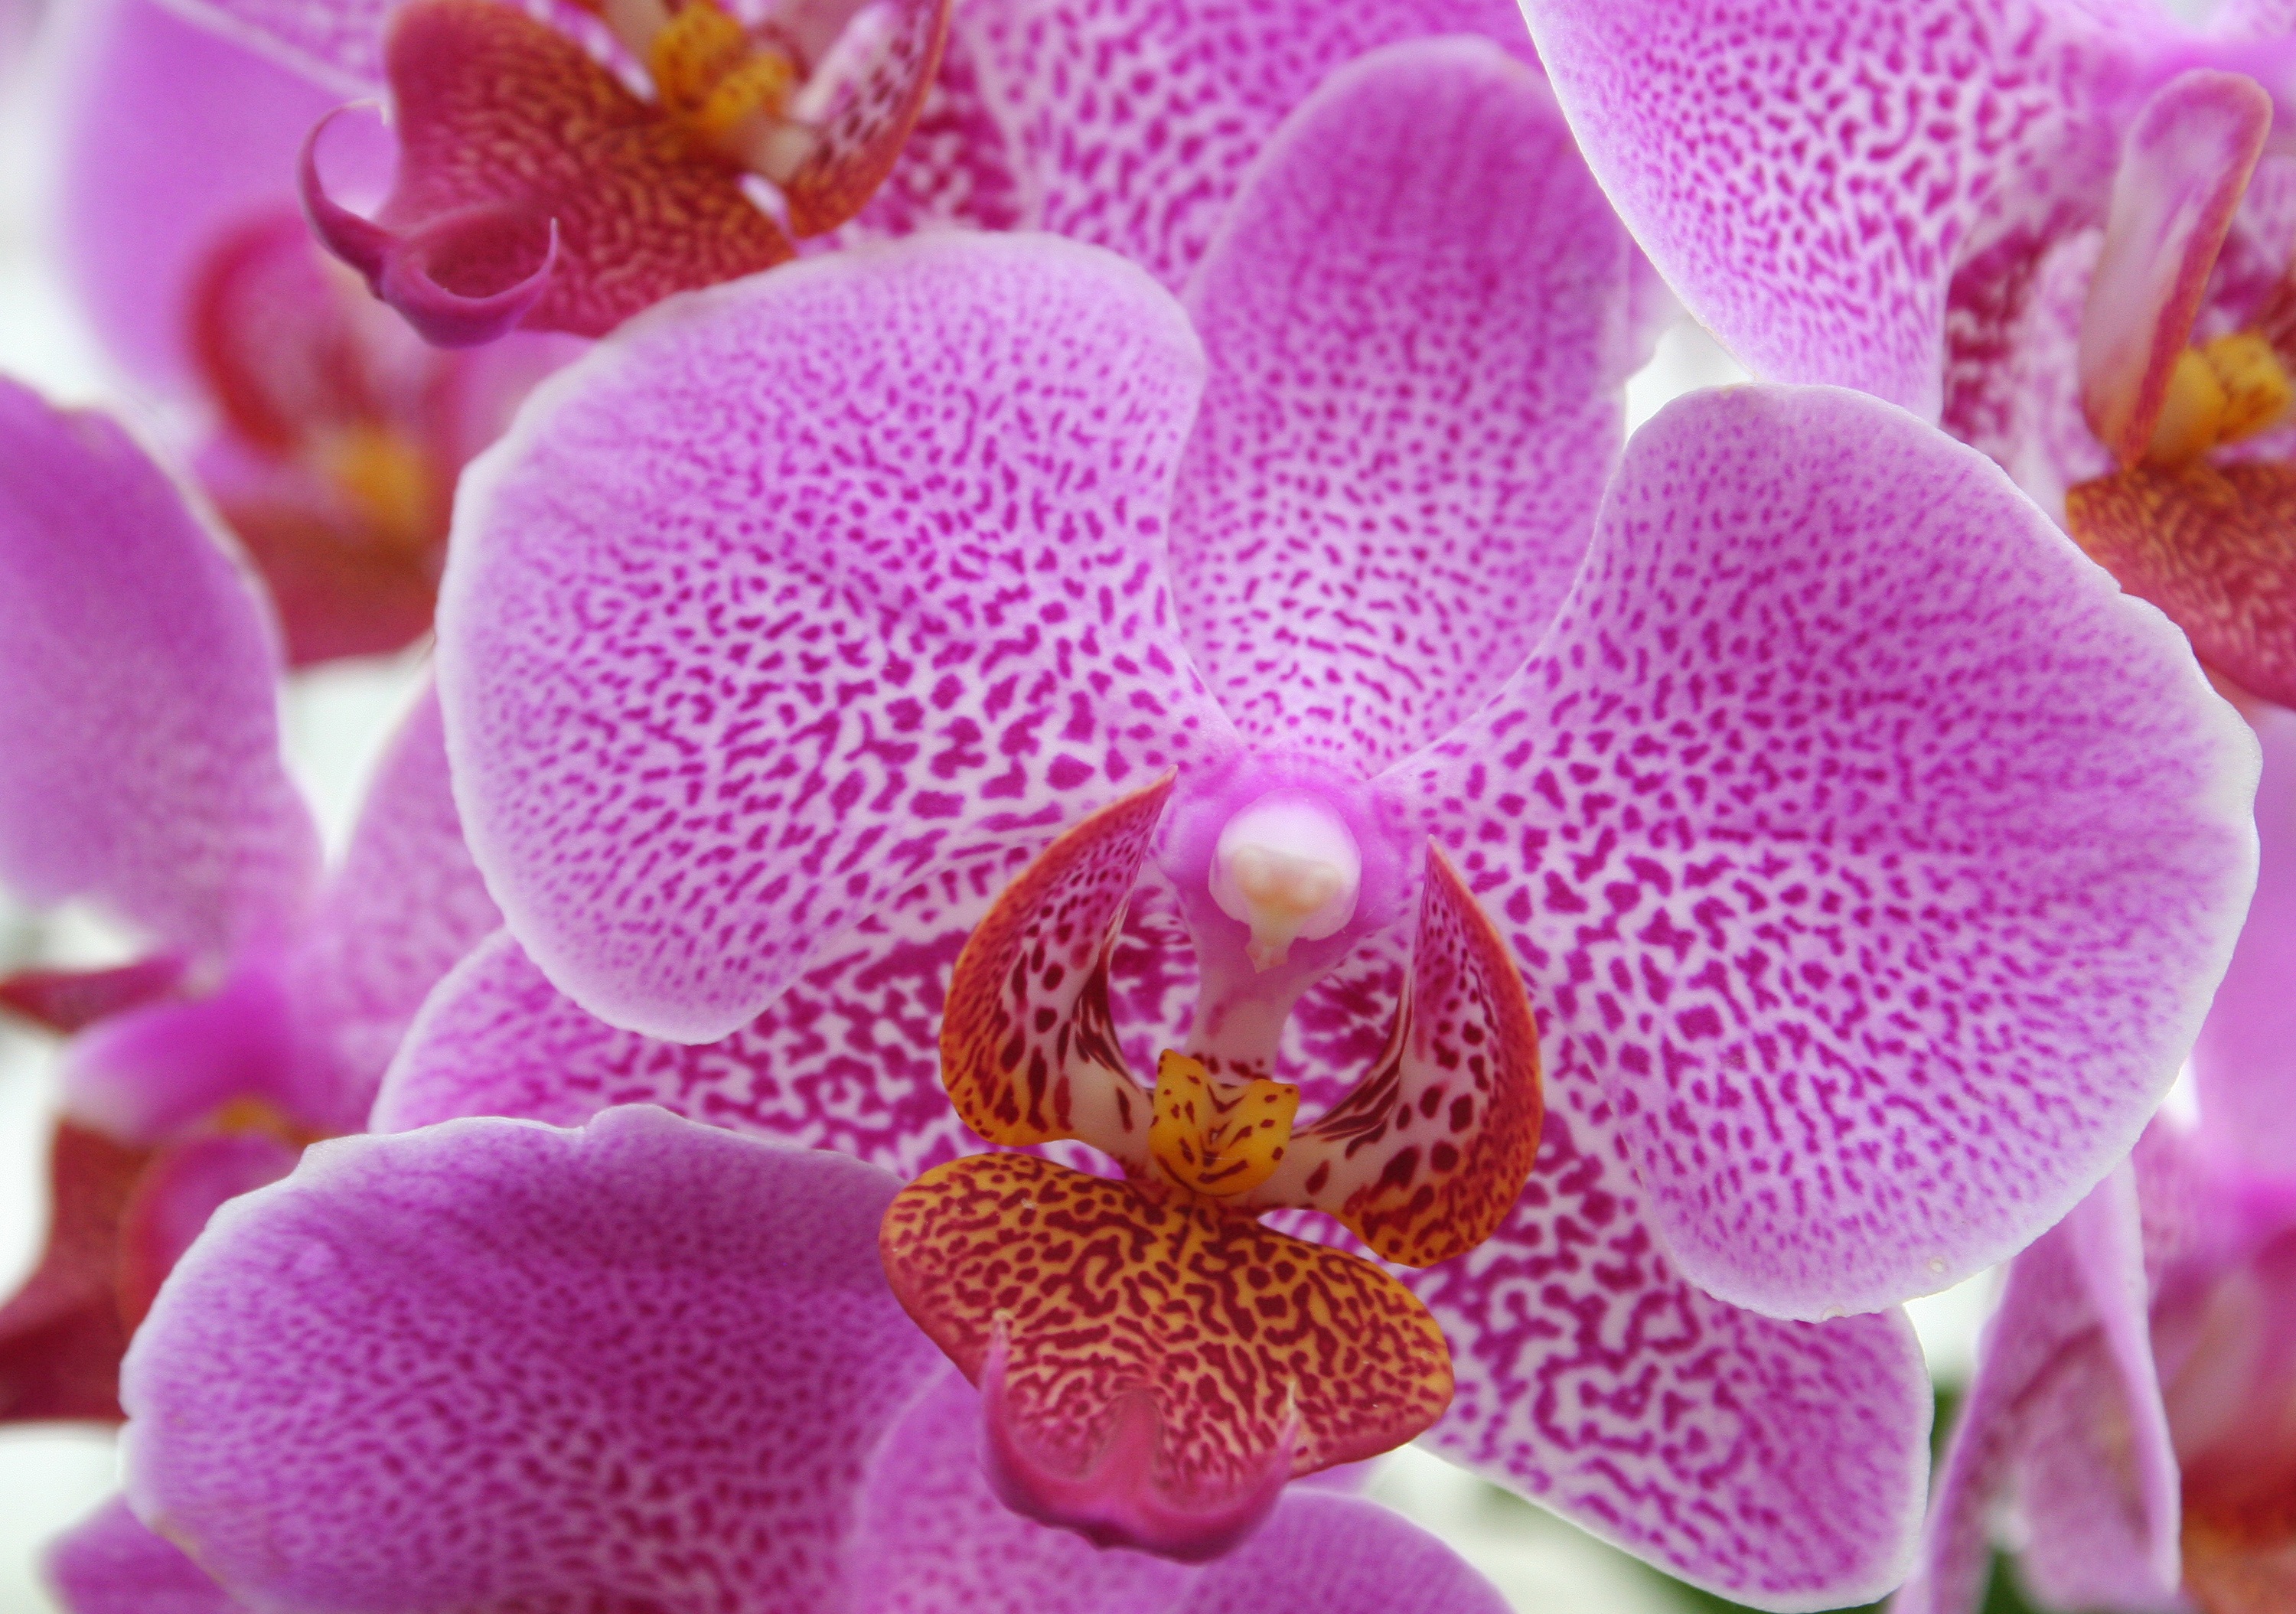 Скачать обои бесплатно Орхидея, Розовый, Макро, Цветок картинка на рабочий стол ПК